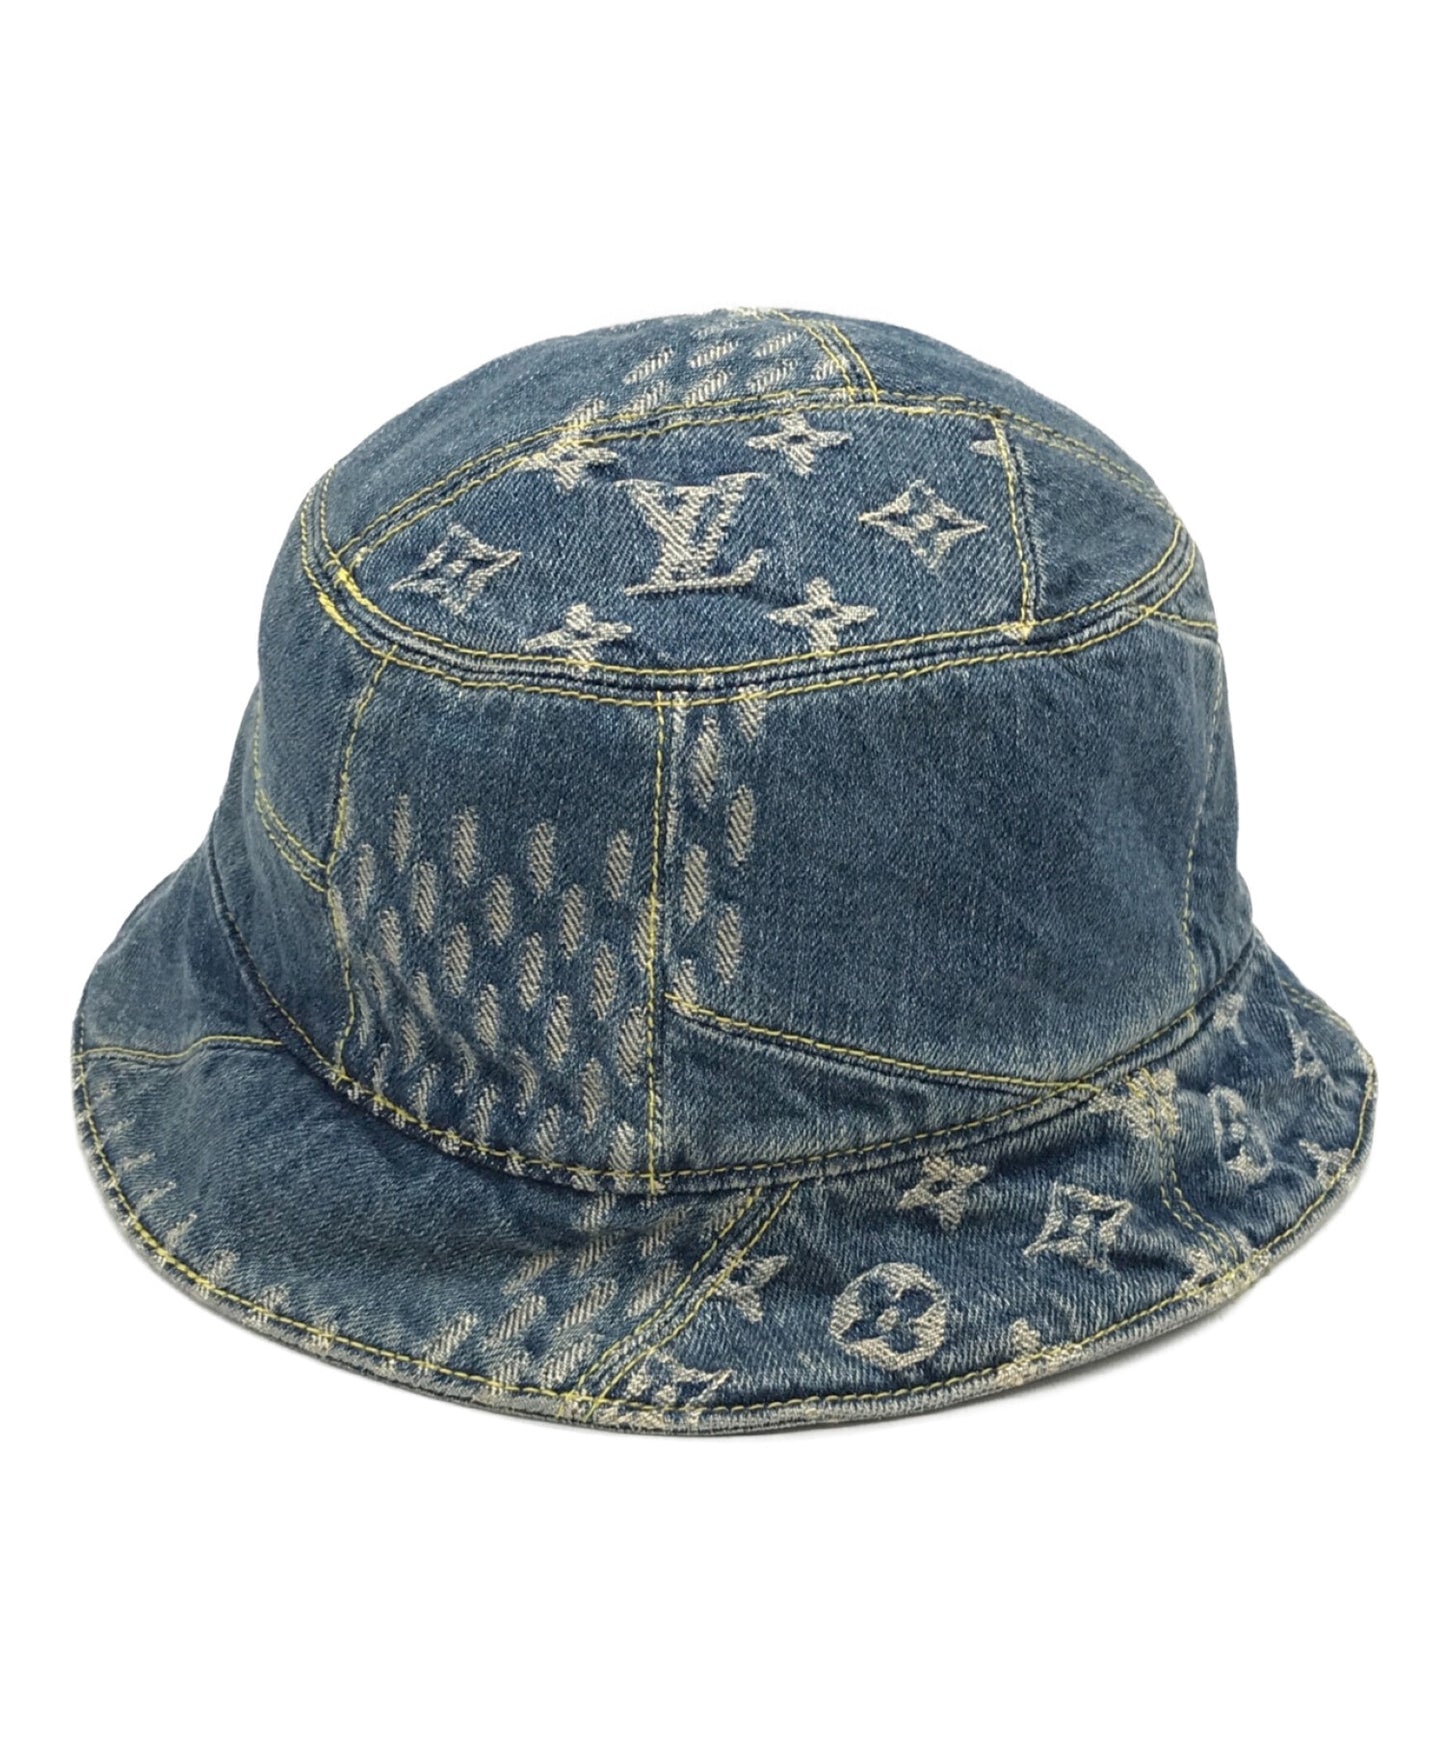 Vuitton mp3243 bonnet denim - Gem